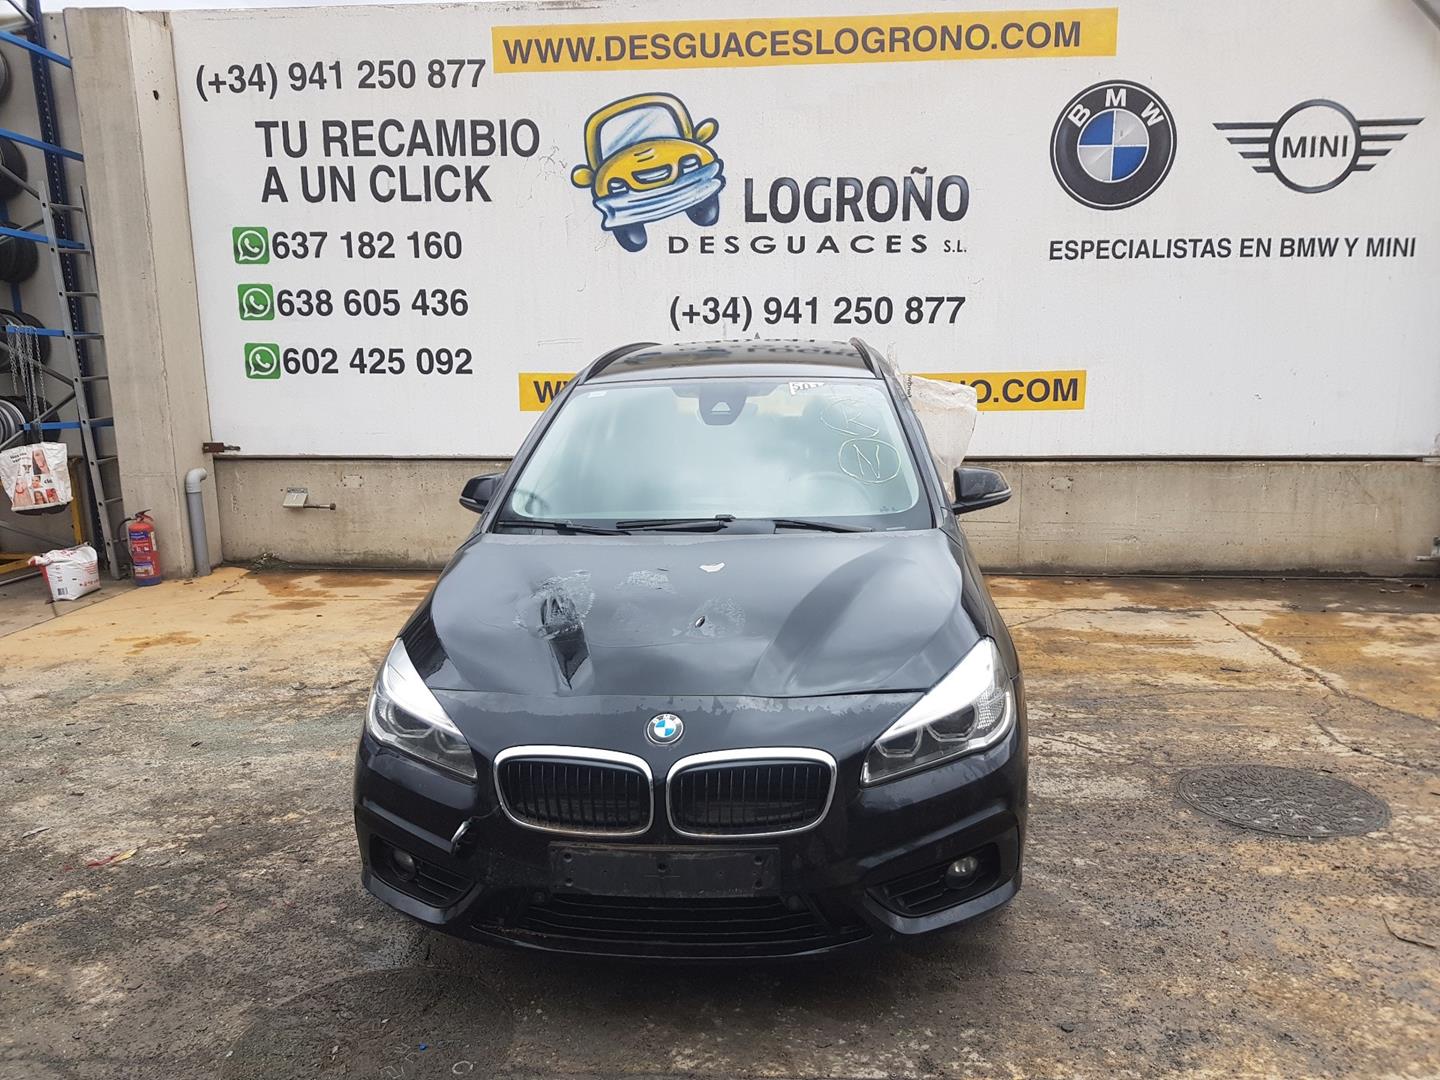 BMW 2 Series Grand Tourer F46 (2018-2023) Kapotas 41117424742, 41117424742, COLORNEGRO475 24149332